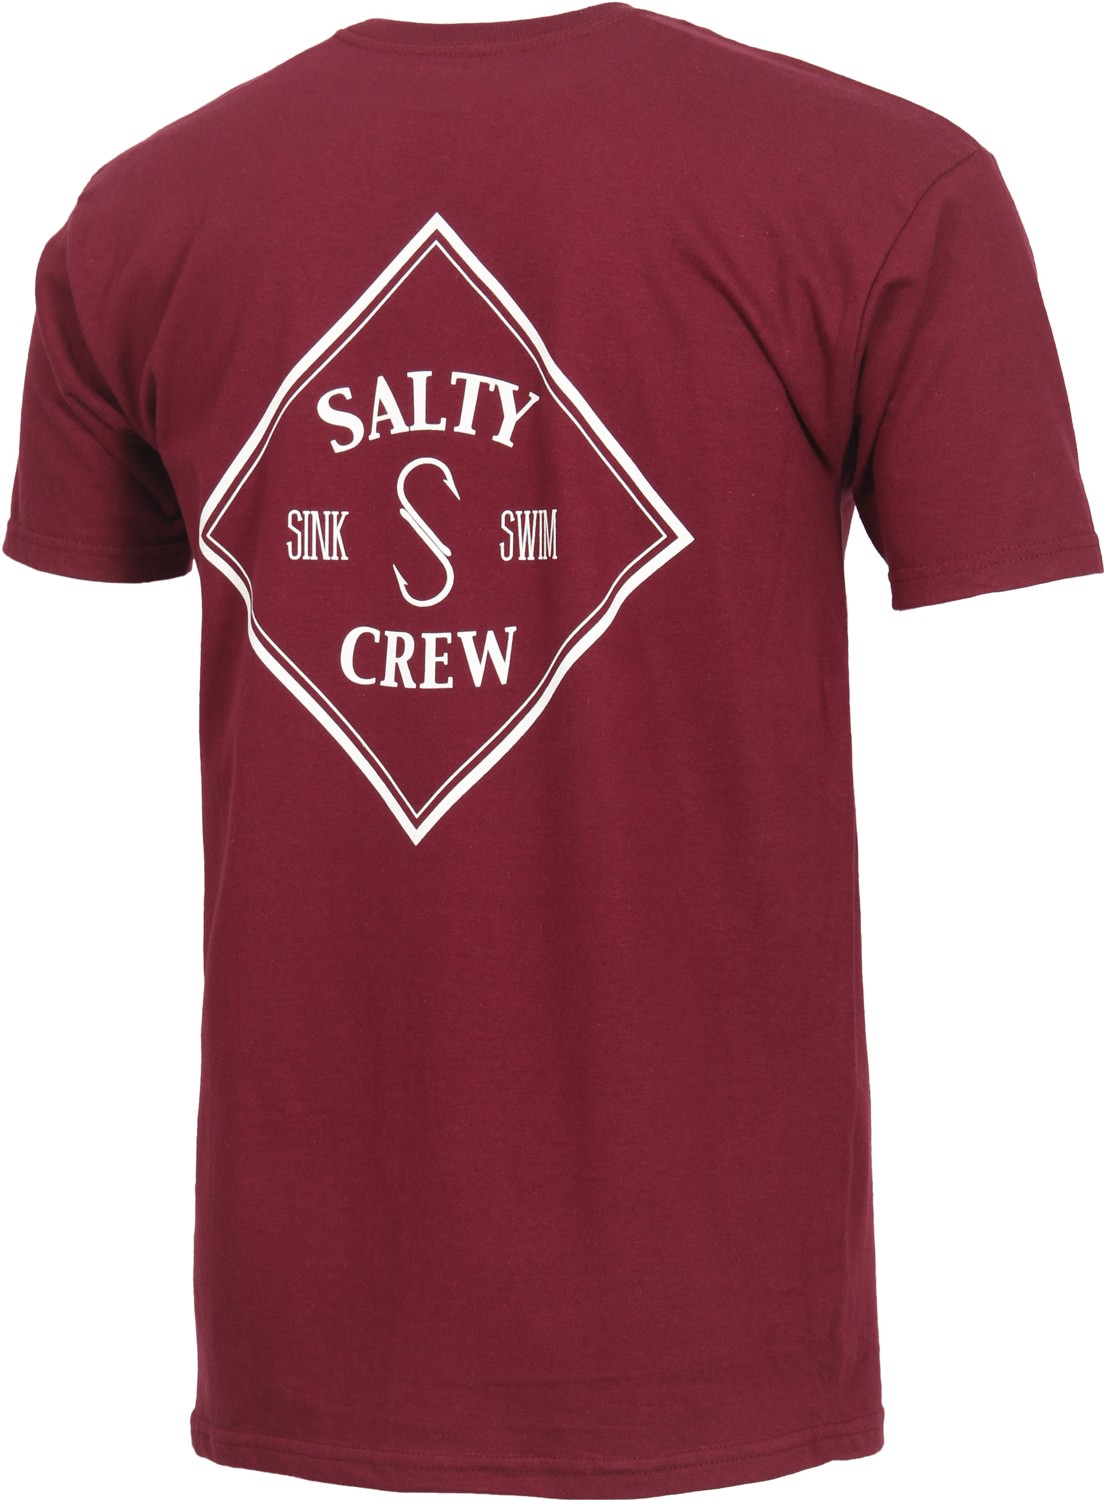 Salty crew Logos